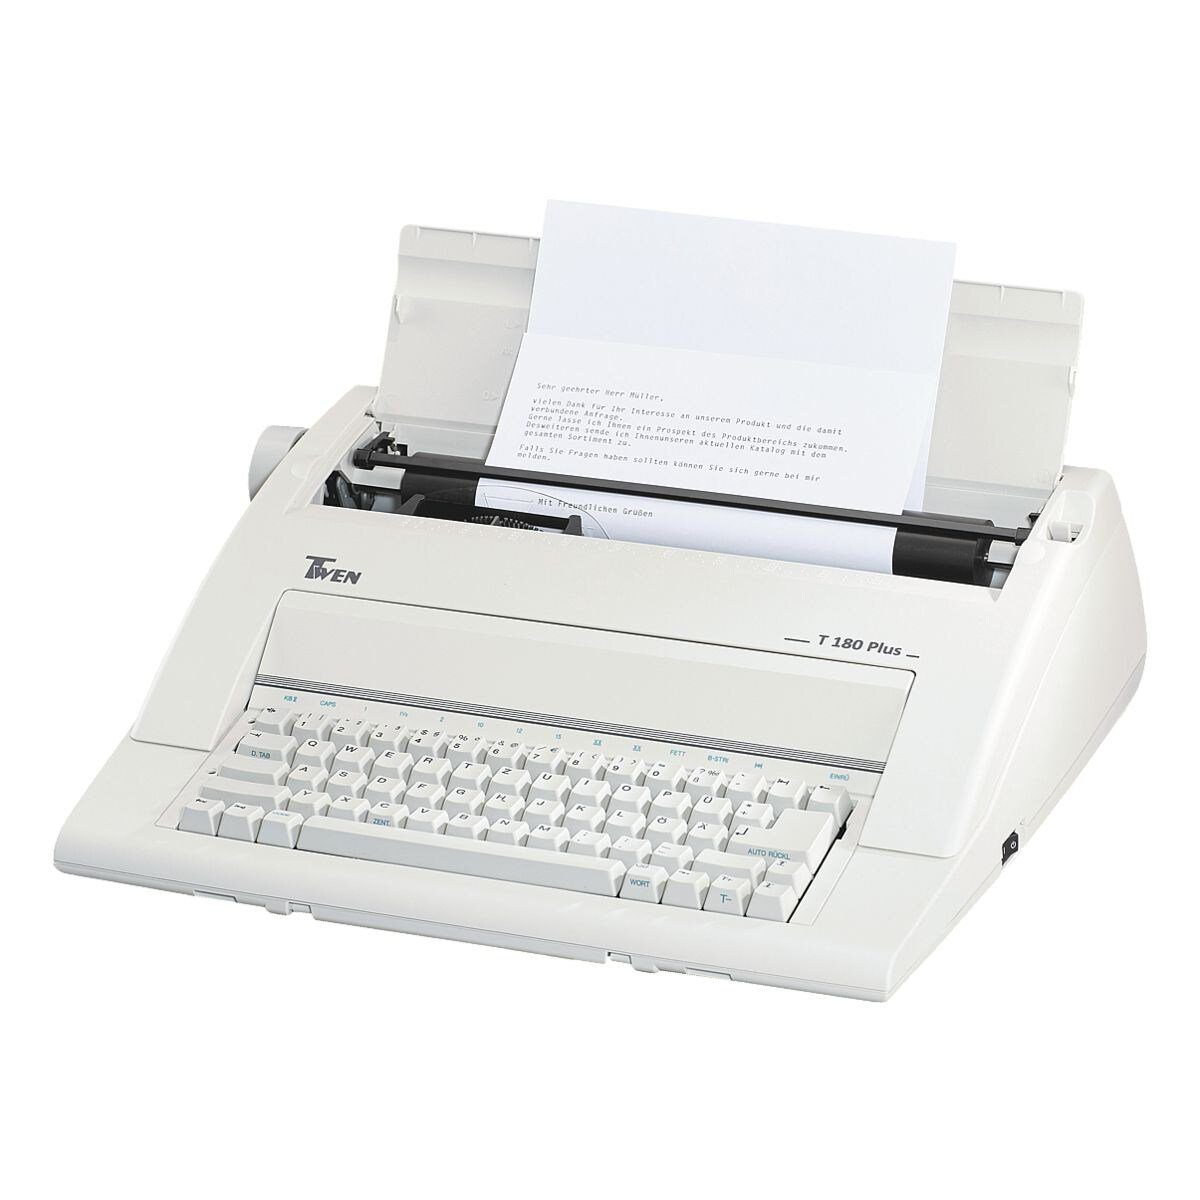 TWEN Schreibmaschine T 180 plus, portabel